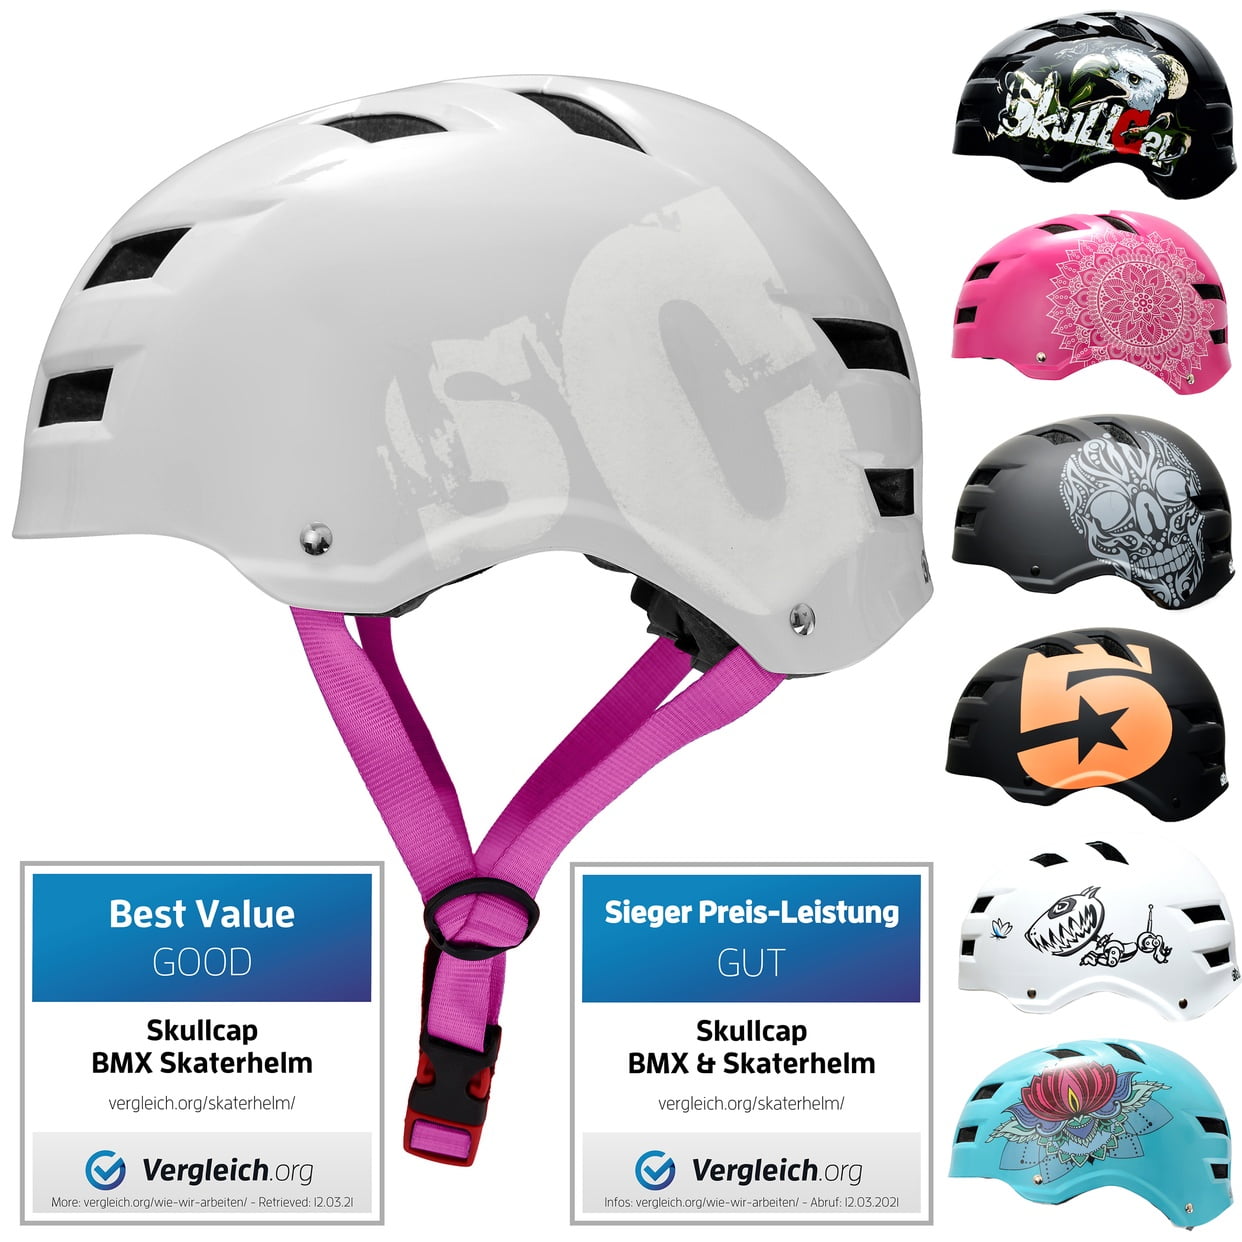 Adult Kids Roller Skate Board Cycle BMX Helmet Adjustable Safe Hlemet Multicolor 